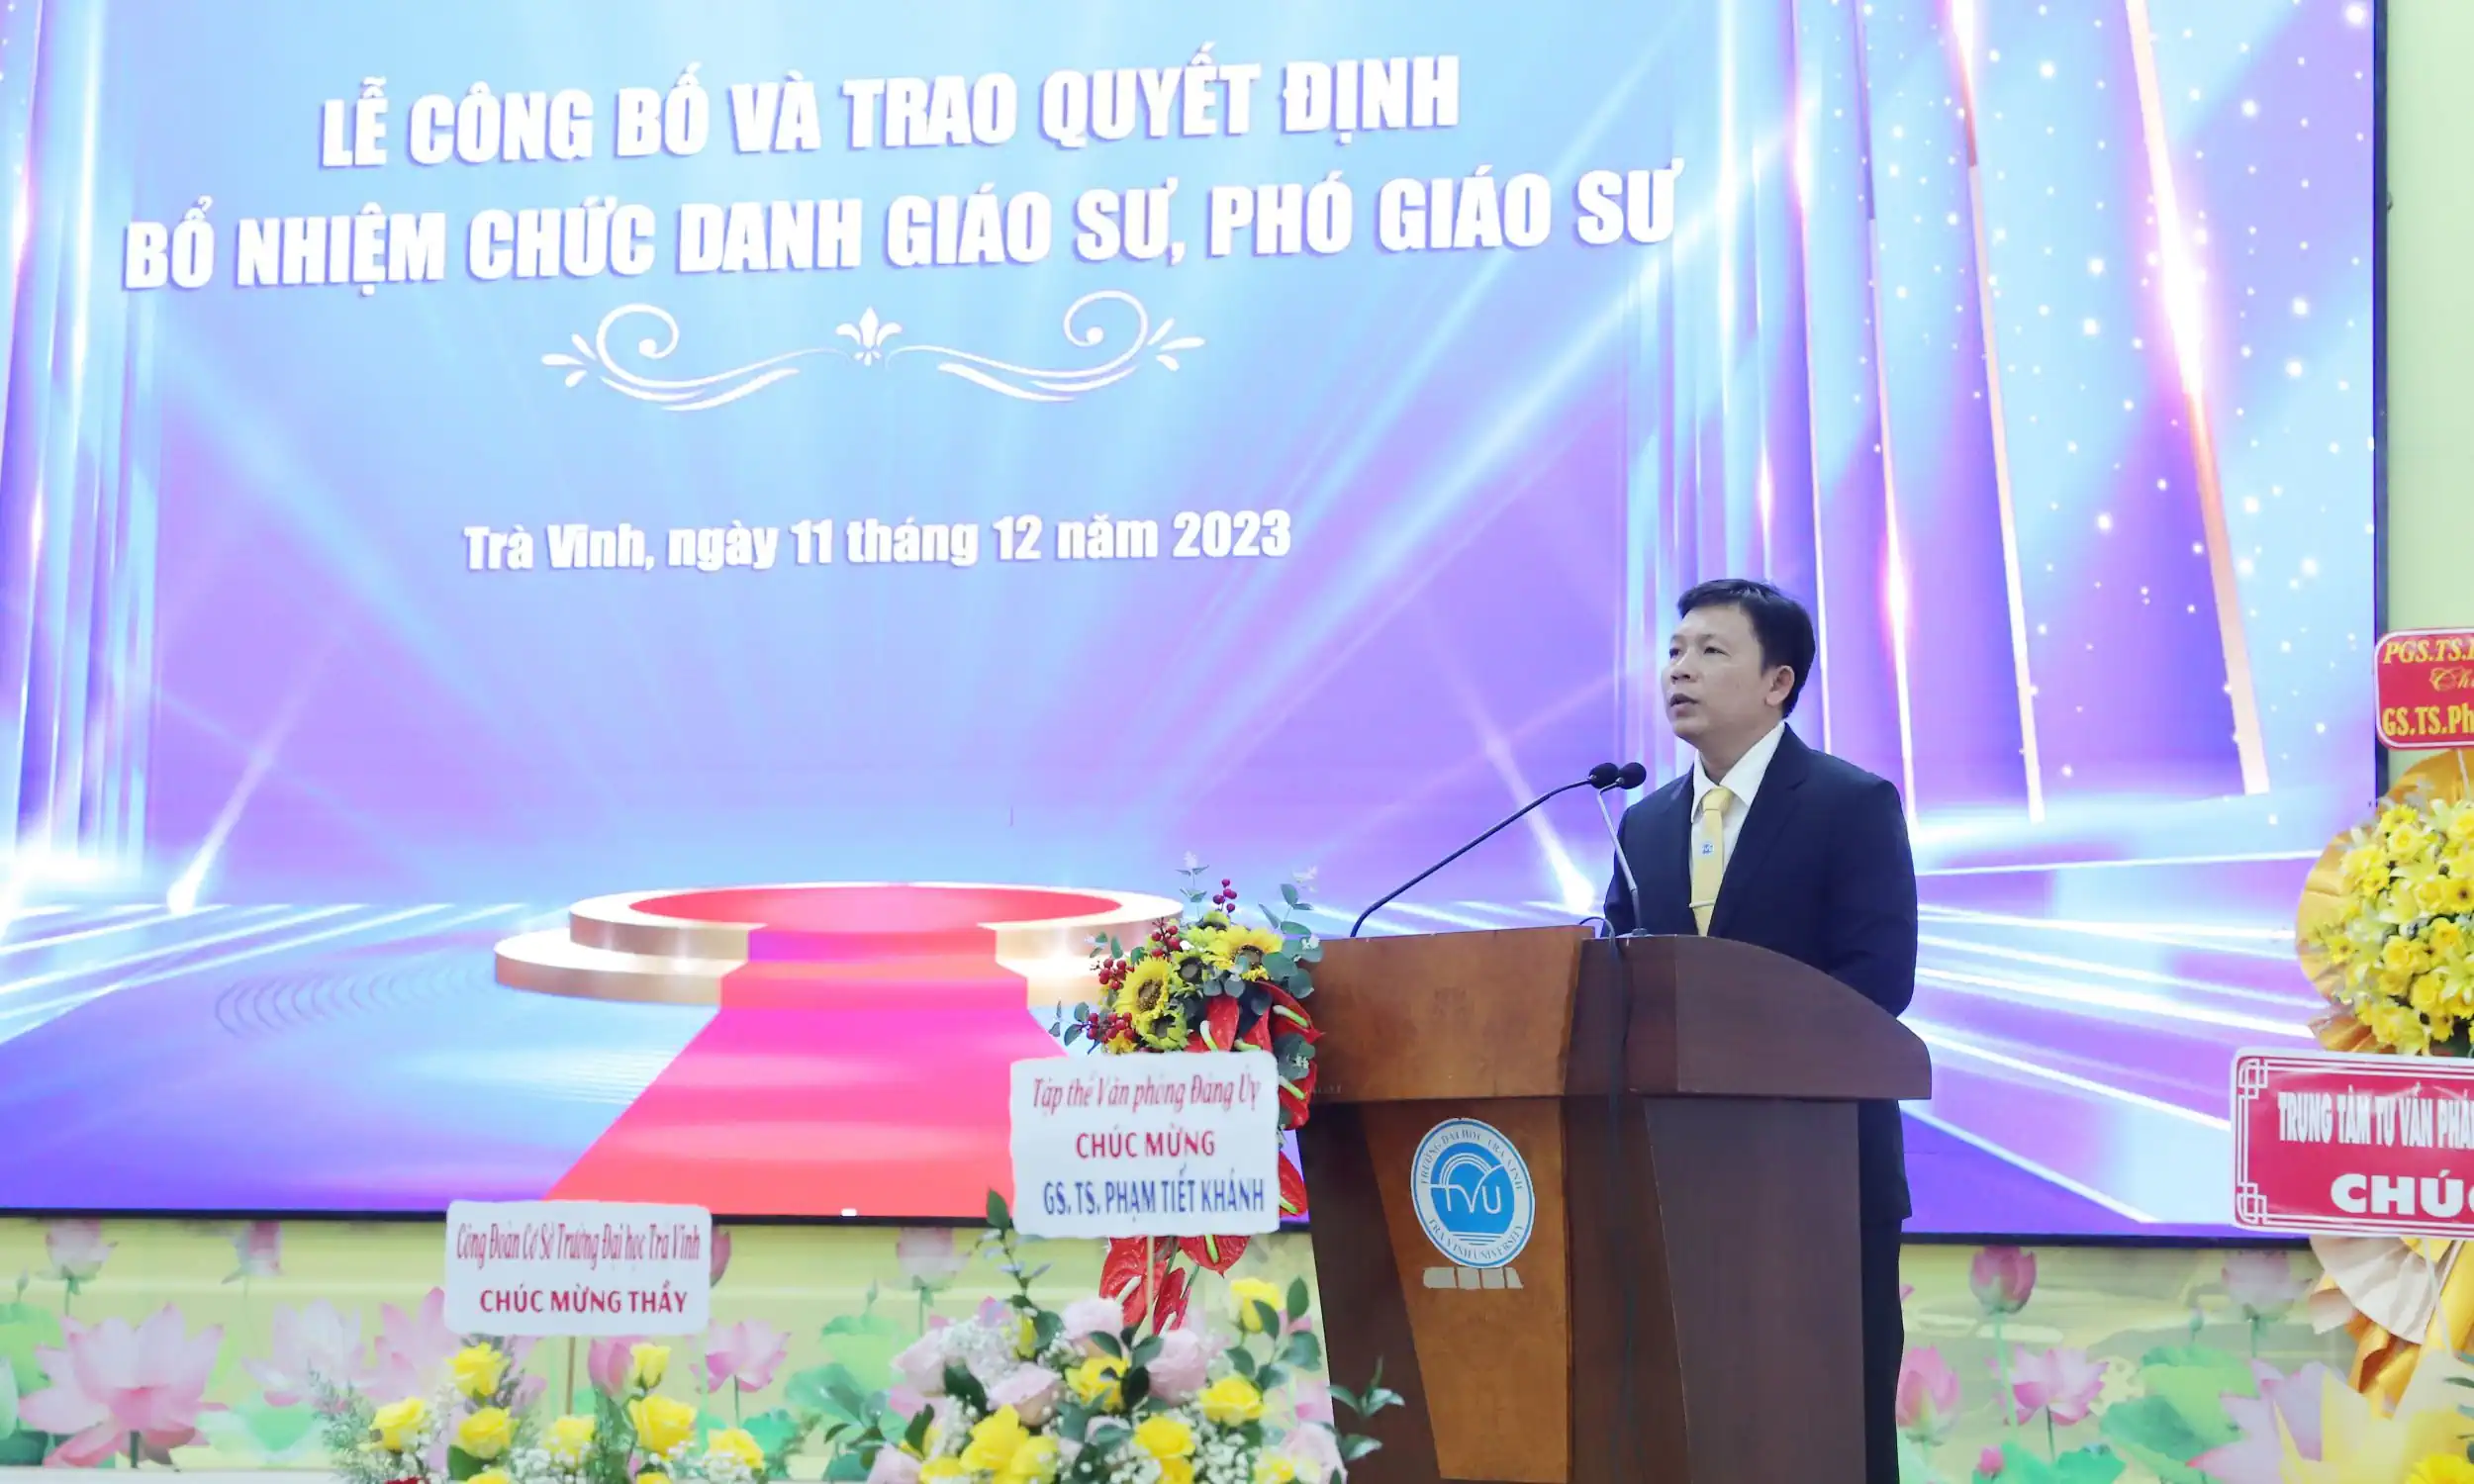 PGS.TS Nguyễn Minh Hòa, Hiệu trưởng Trường ĐH Trà Vinh, phát biểu tại buổi lễ.